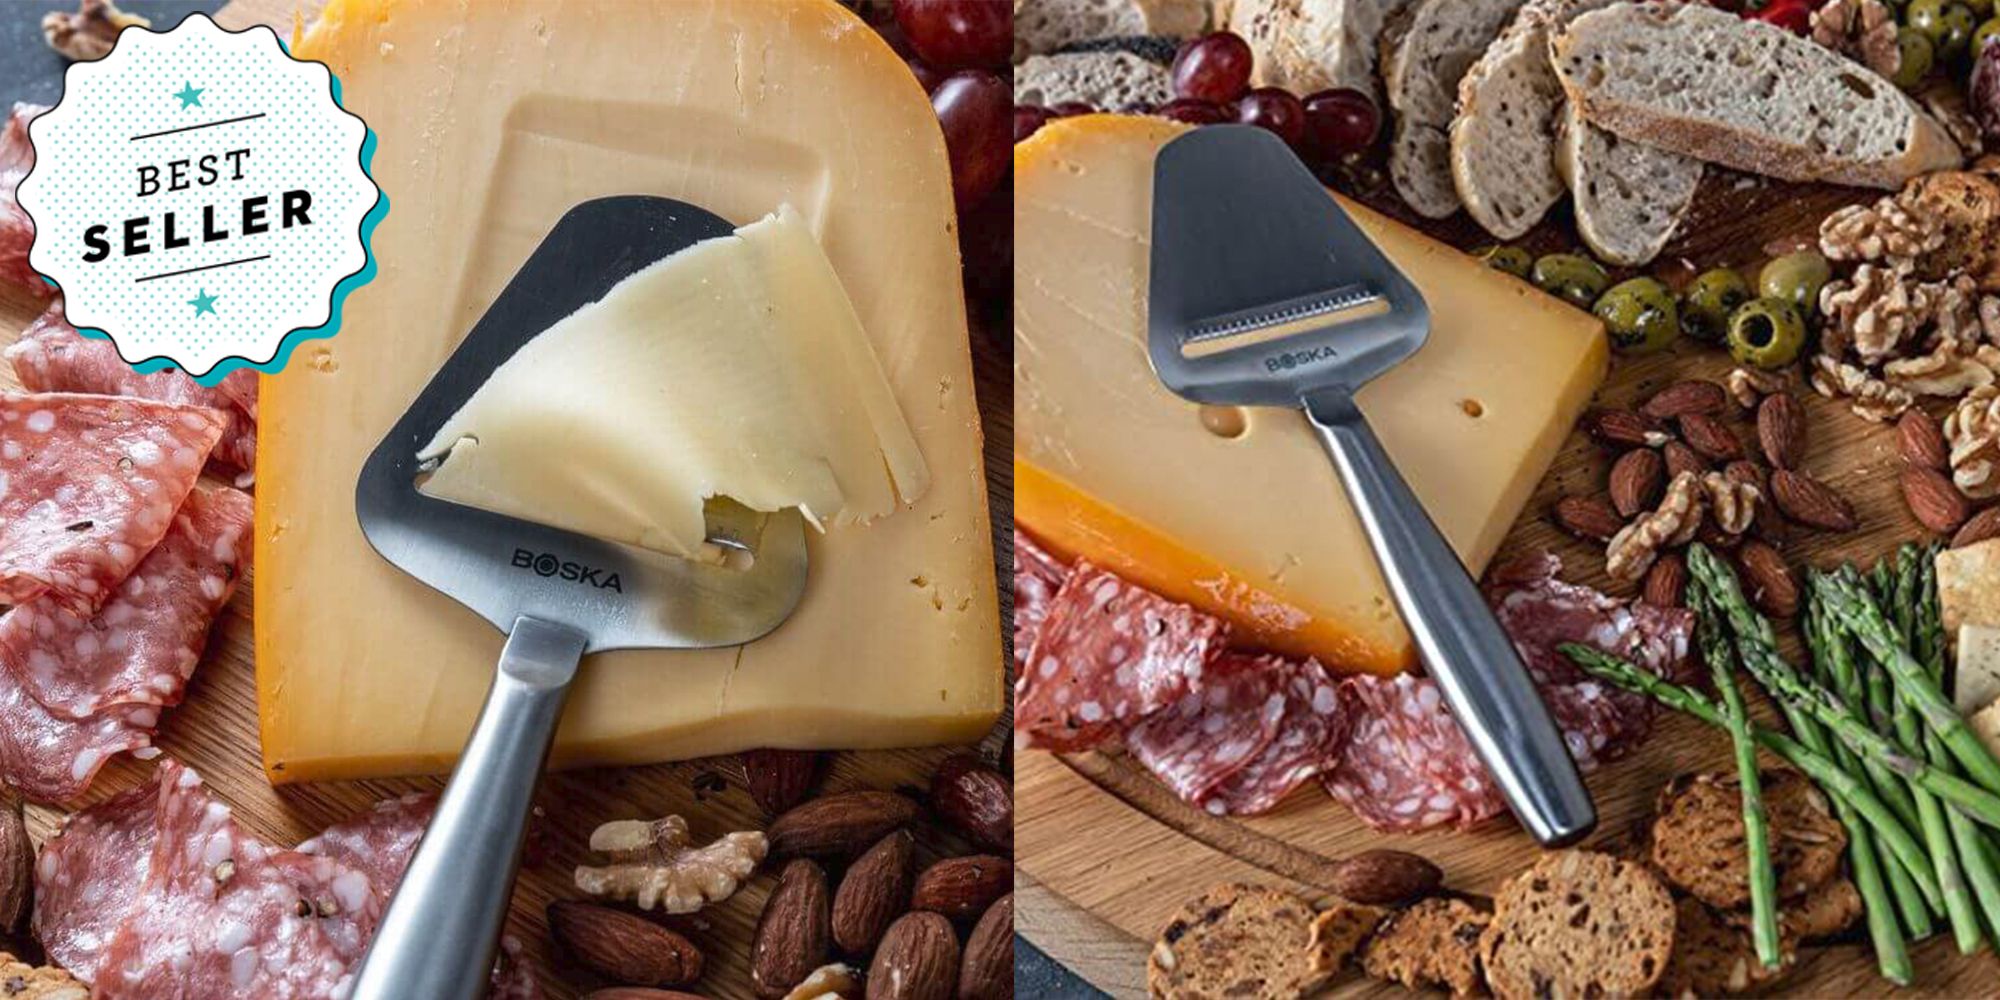 Boska Copenhagen Stainless Steel Cheese Slicer by World Market